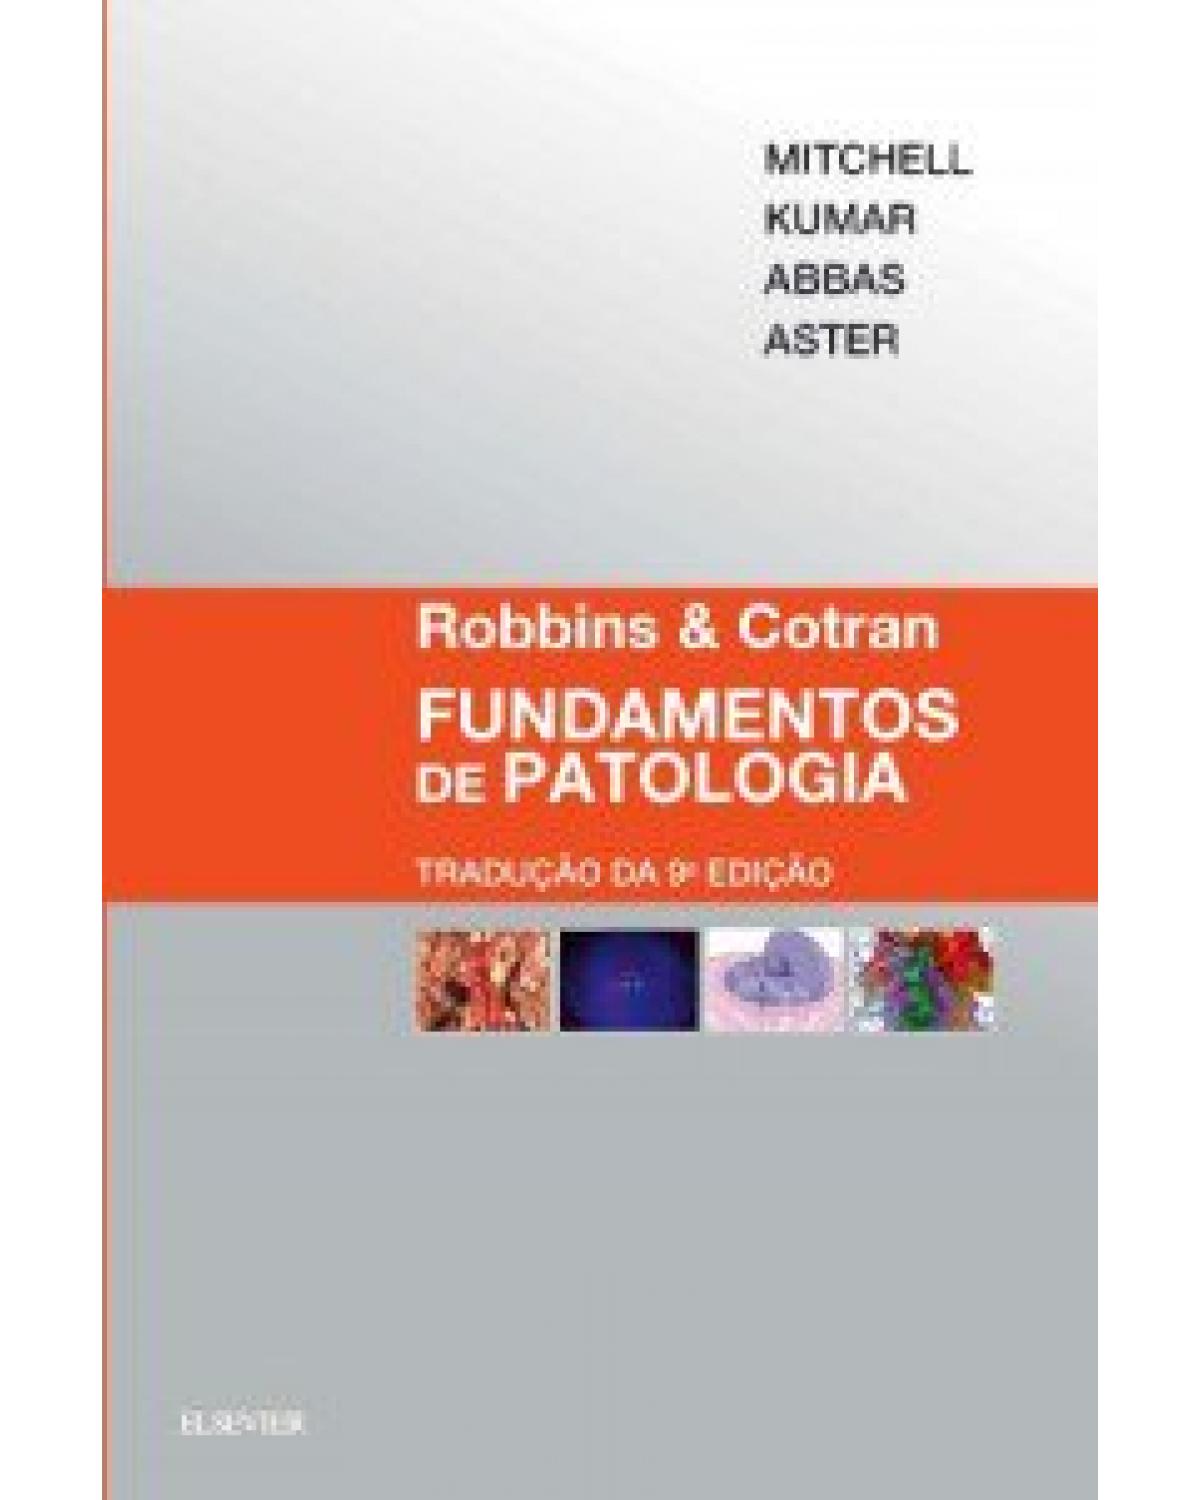 Robbins & Cotran - Fundamentos de patologia - 9ª Edição | 2017